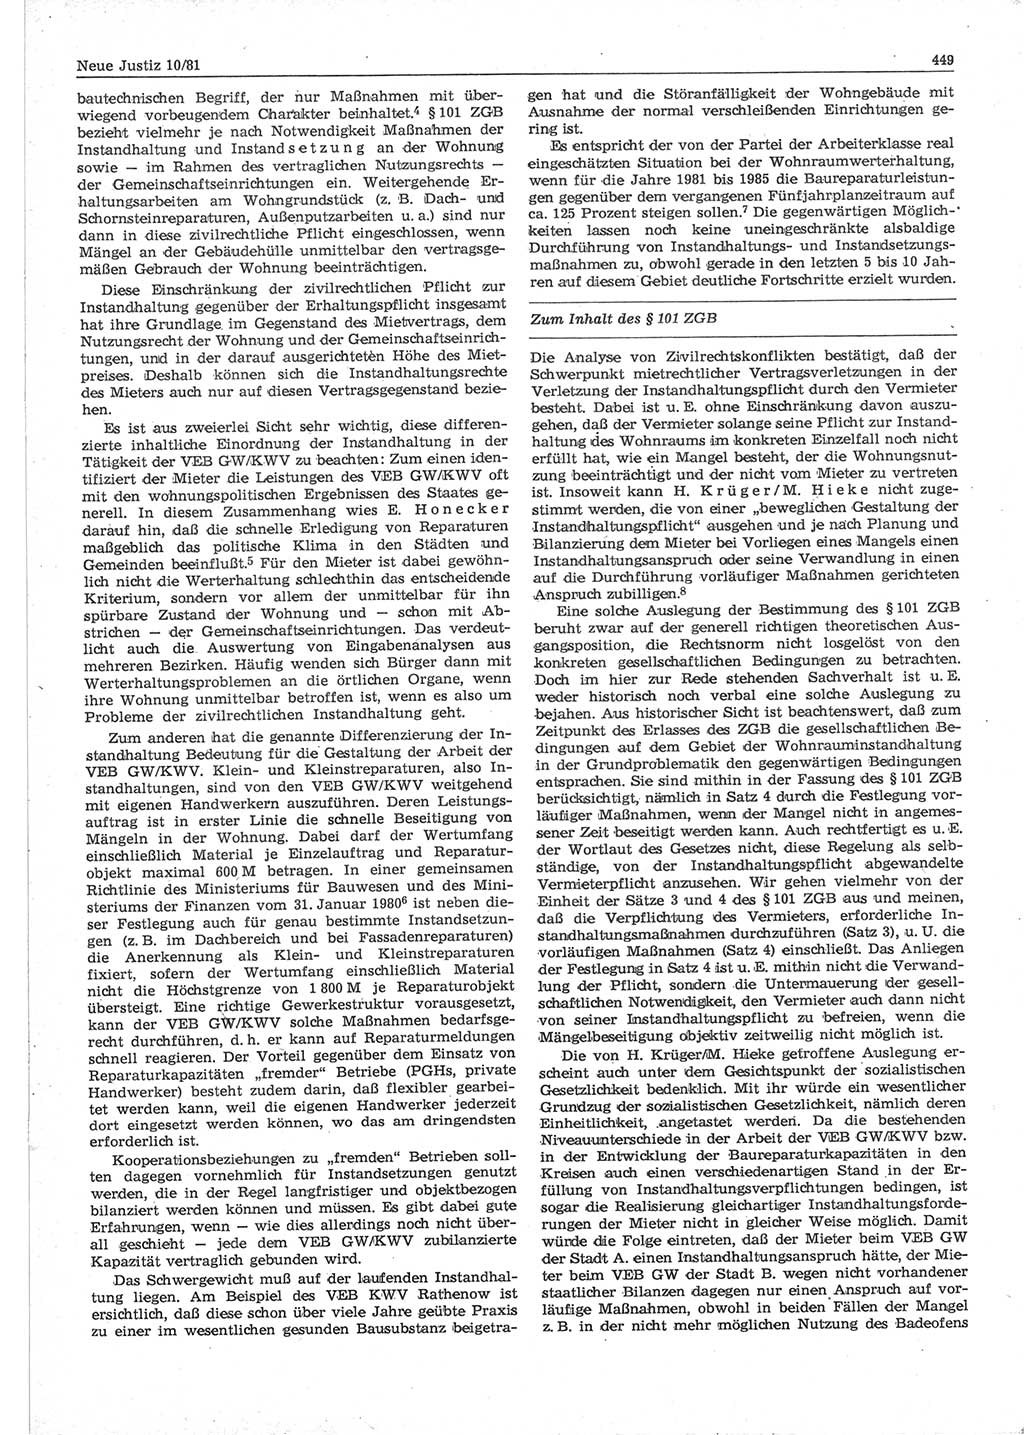 Neue Justiz (NJ), Zeitschrift für sozialistisches Recht und Gesetzlichkeit [Deutsche Demokratische Republik (DDR)], 35. Jahrgang 1981, Seite 449 (NJ DDR 1981, S. 449)